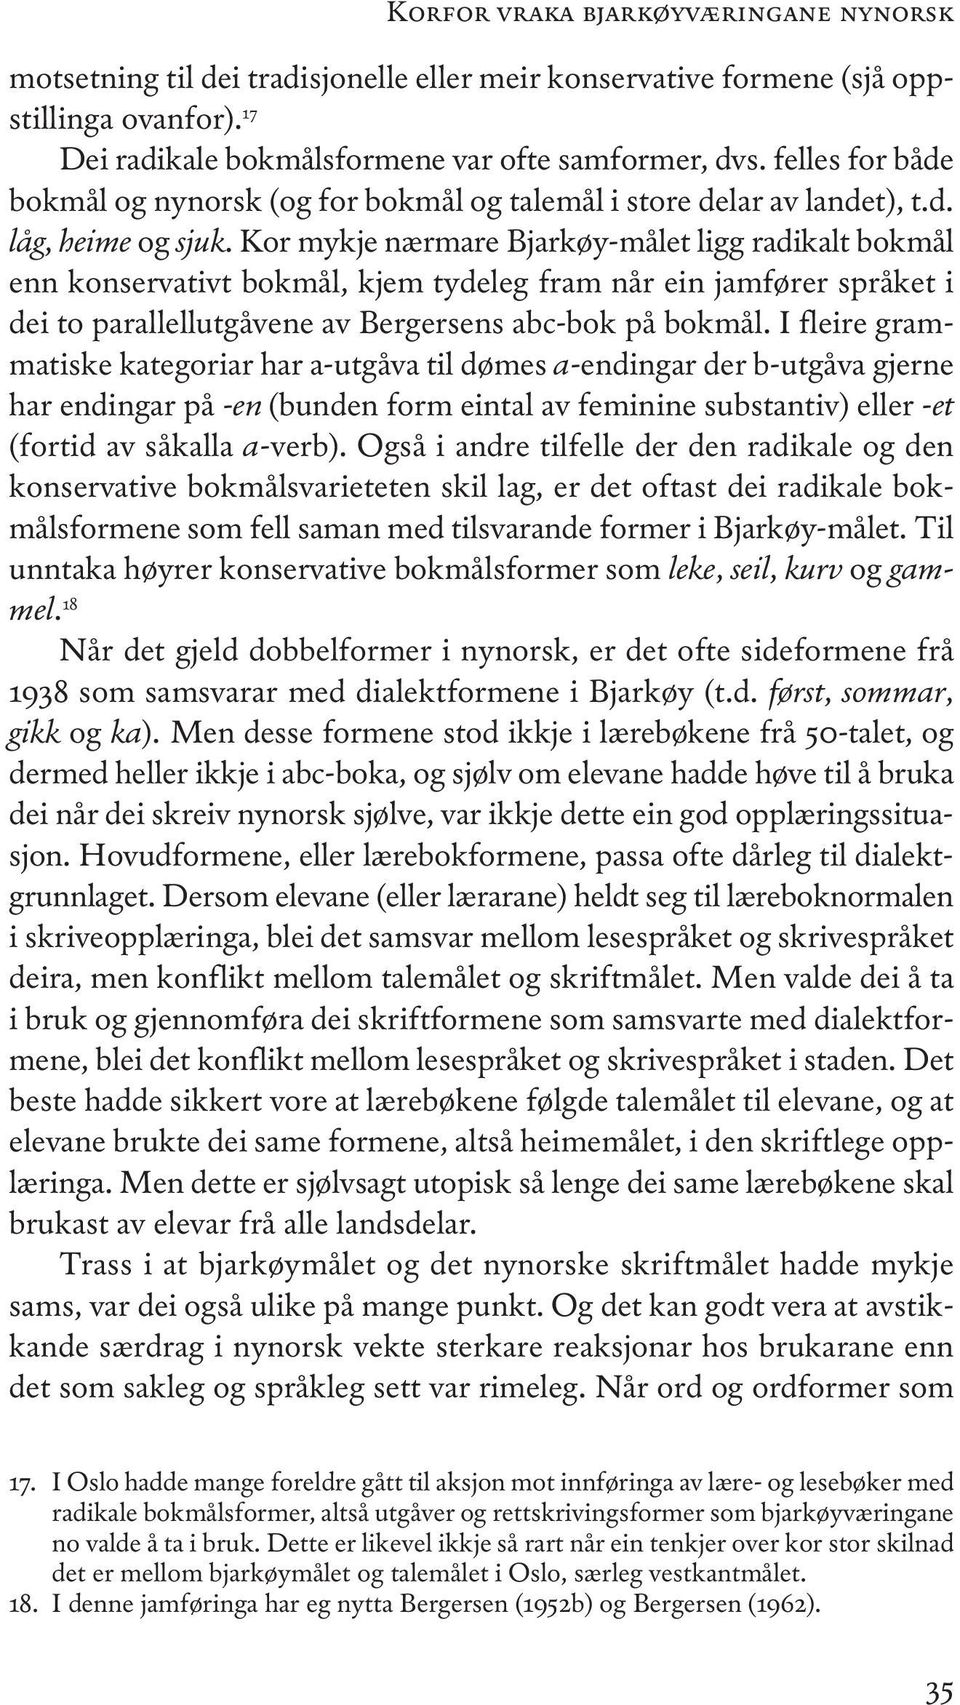 Kor mykje nærmare Bjarkøy-målet ligg radikalt bokmål enn konservativt bokmål, kjem tydeleg fram når ein jamfører språket i dei to parallellutgåvene av Bergersens abc-bok på bokmål.